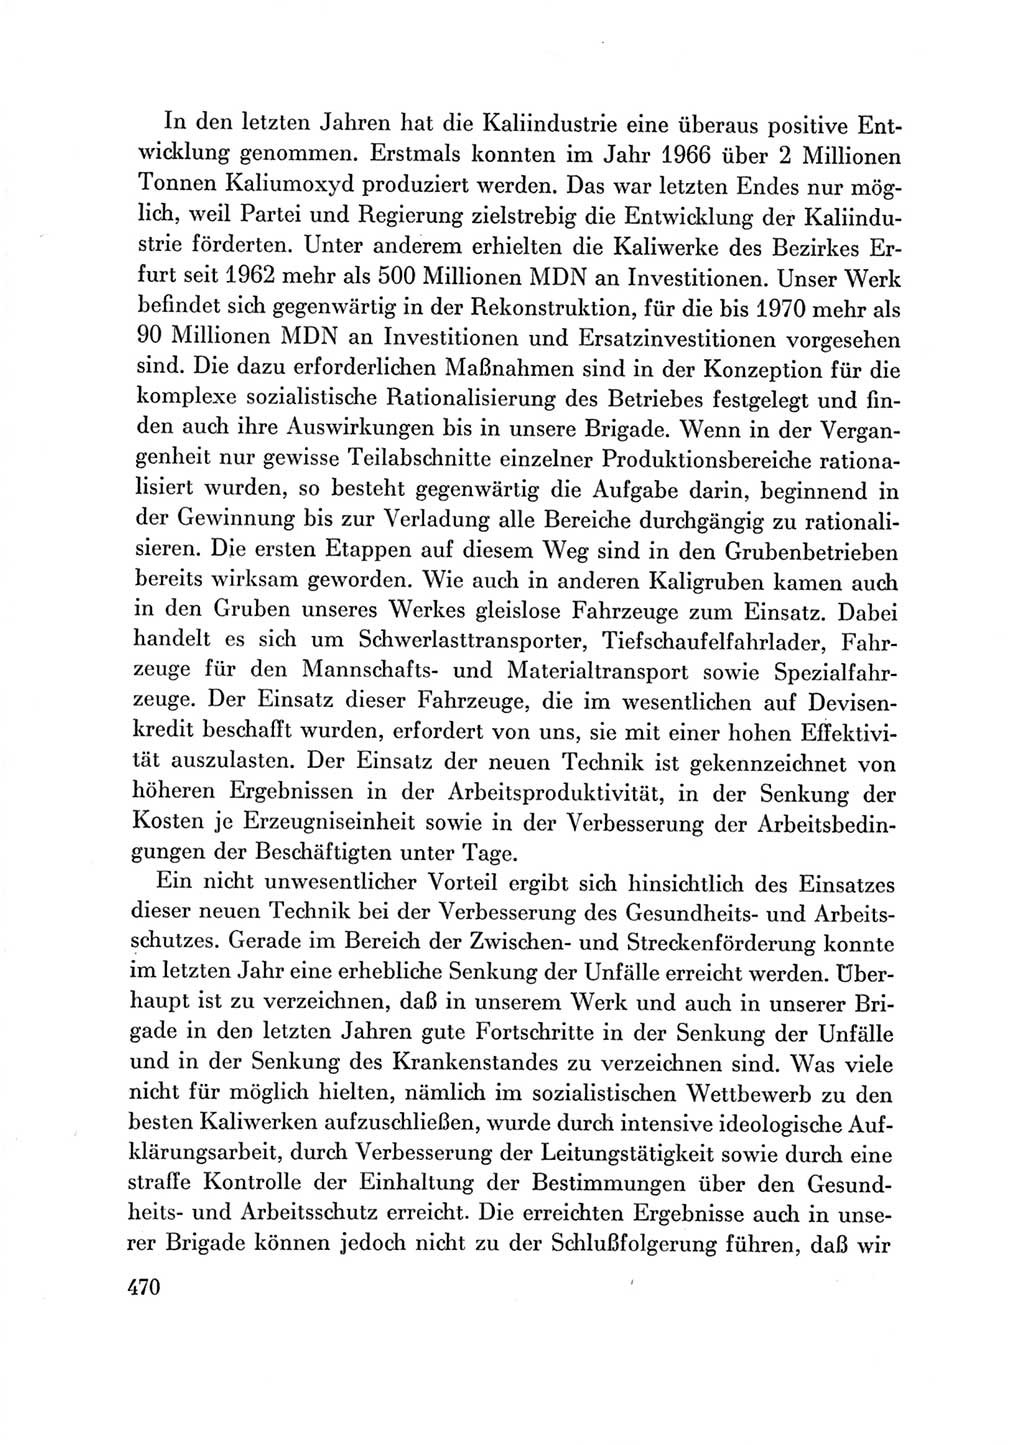 Protokoll der Verhandlungen des Ⅶ. Parteitages der Sozialistischen Einheitspartei Deutschlands (SED) [Deutsche Demokratische Republik (DDR)] 1967, Band Ⅲ, Seite 470 (Prot. Verh. Ⅶ. PT SED DDR 1967, Bd. Ⅲ, S. 470)